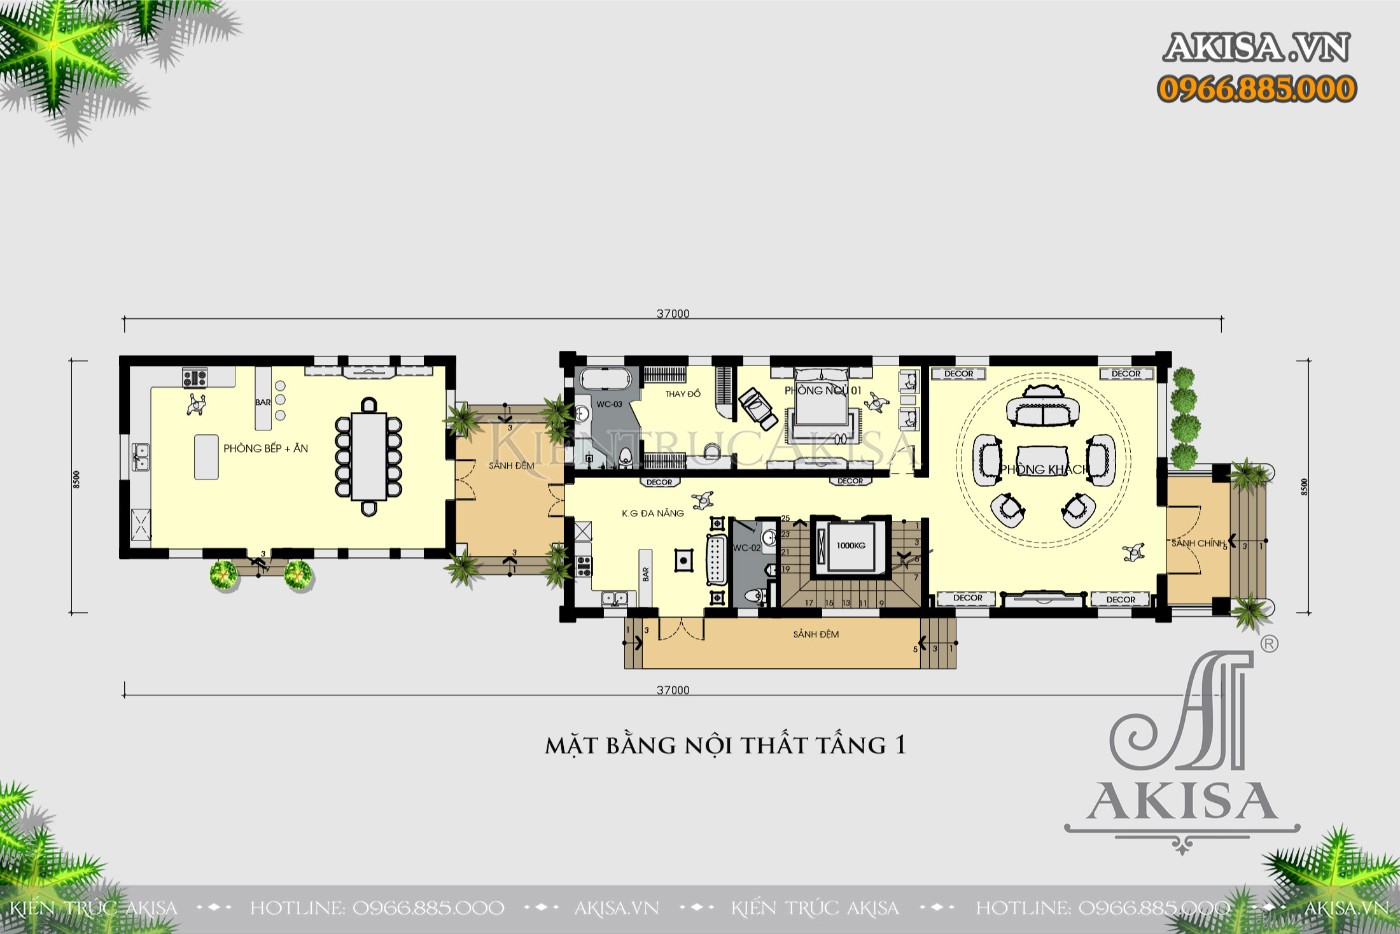 Mẫu nhà biệt thự tân cổ điển 5 tầng đẹp tinh tế (CĐT: bà Phúc - Bắc Ninh) BT52601